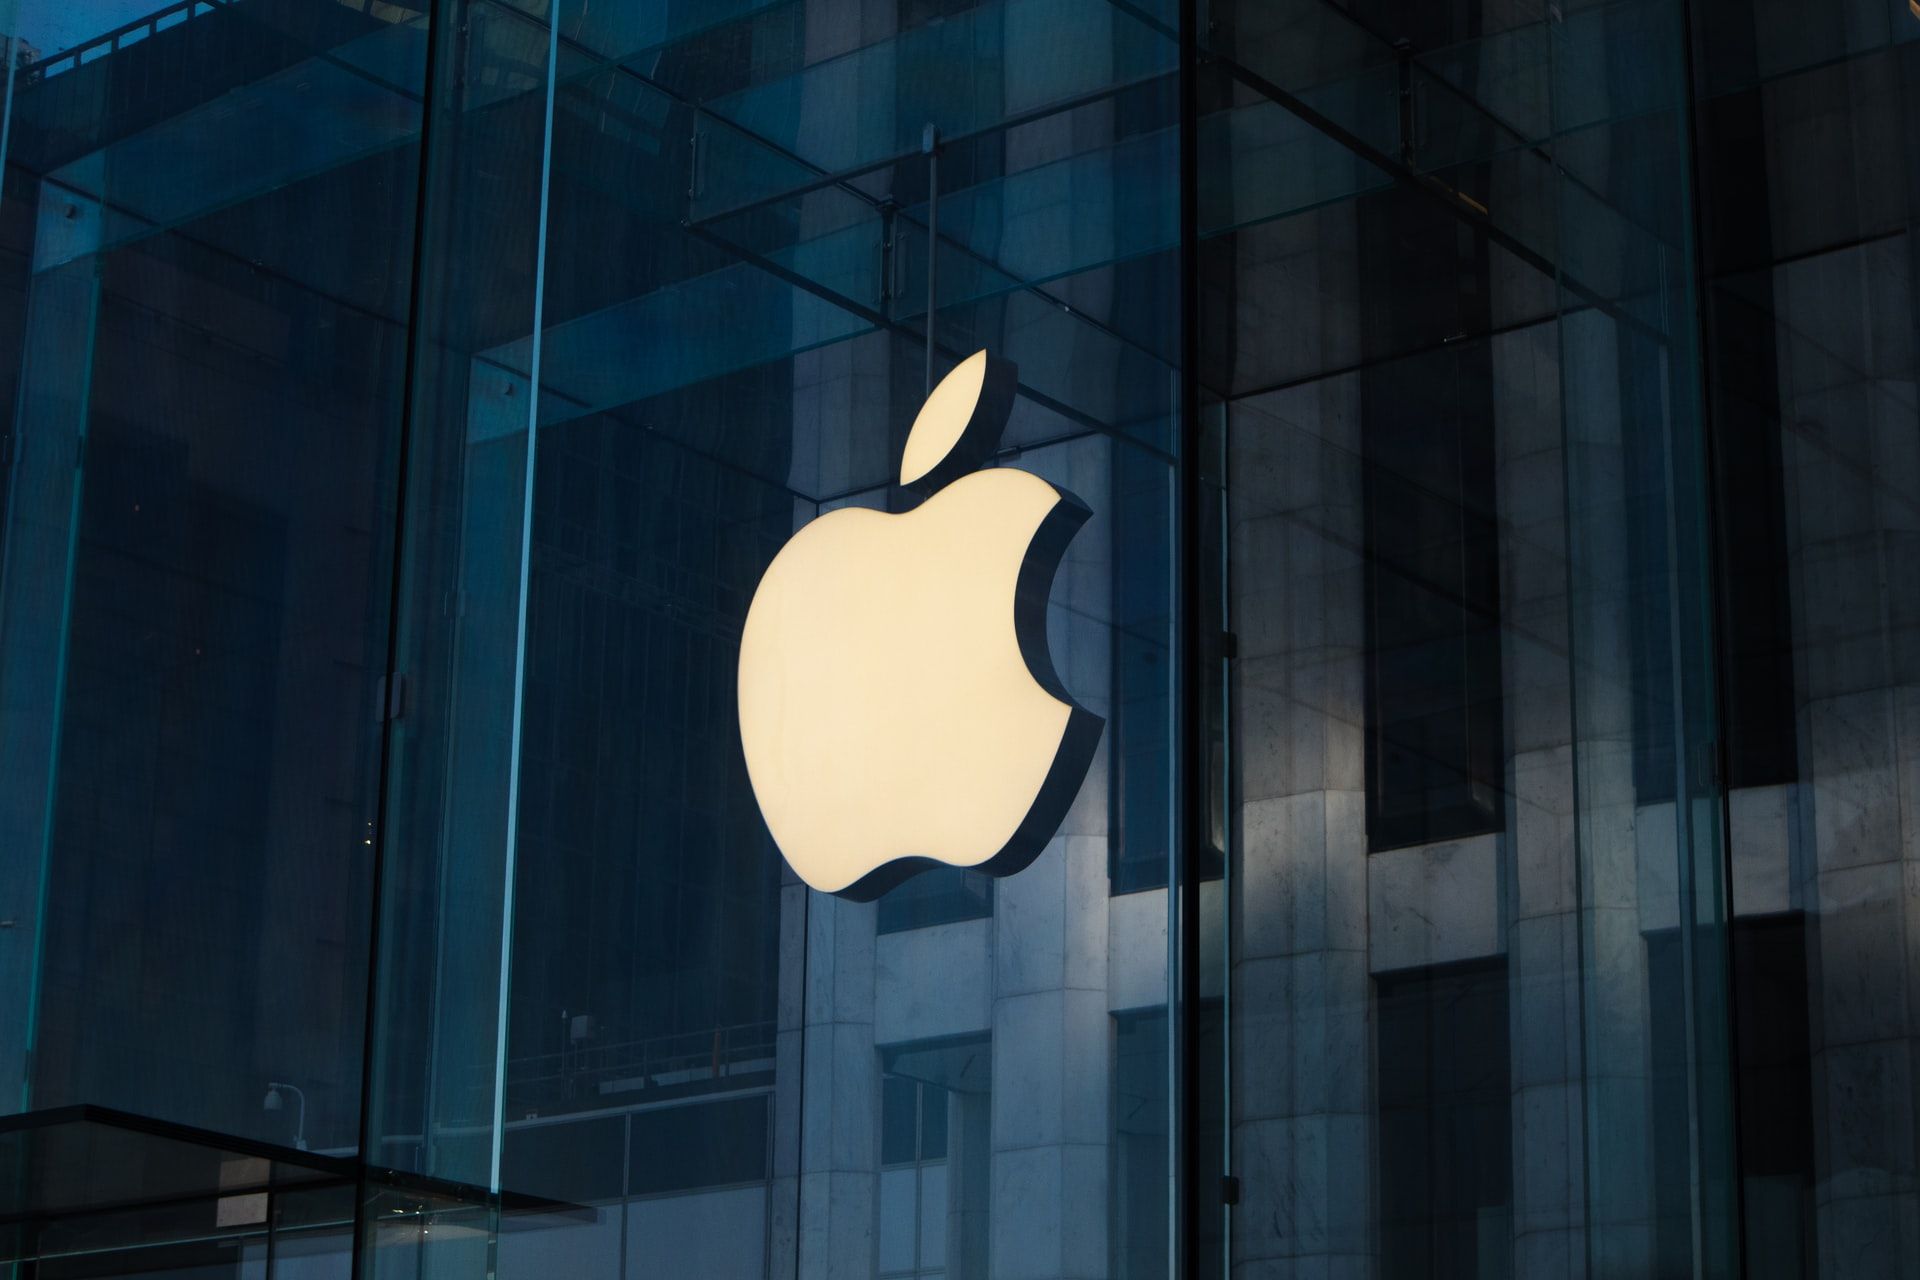 苹果新政策将允许NFT市场通过Apple Pay出售NFT